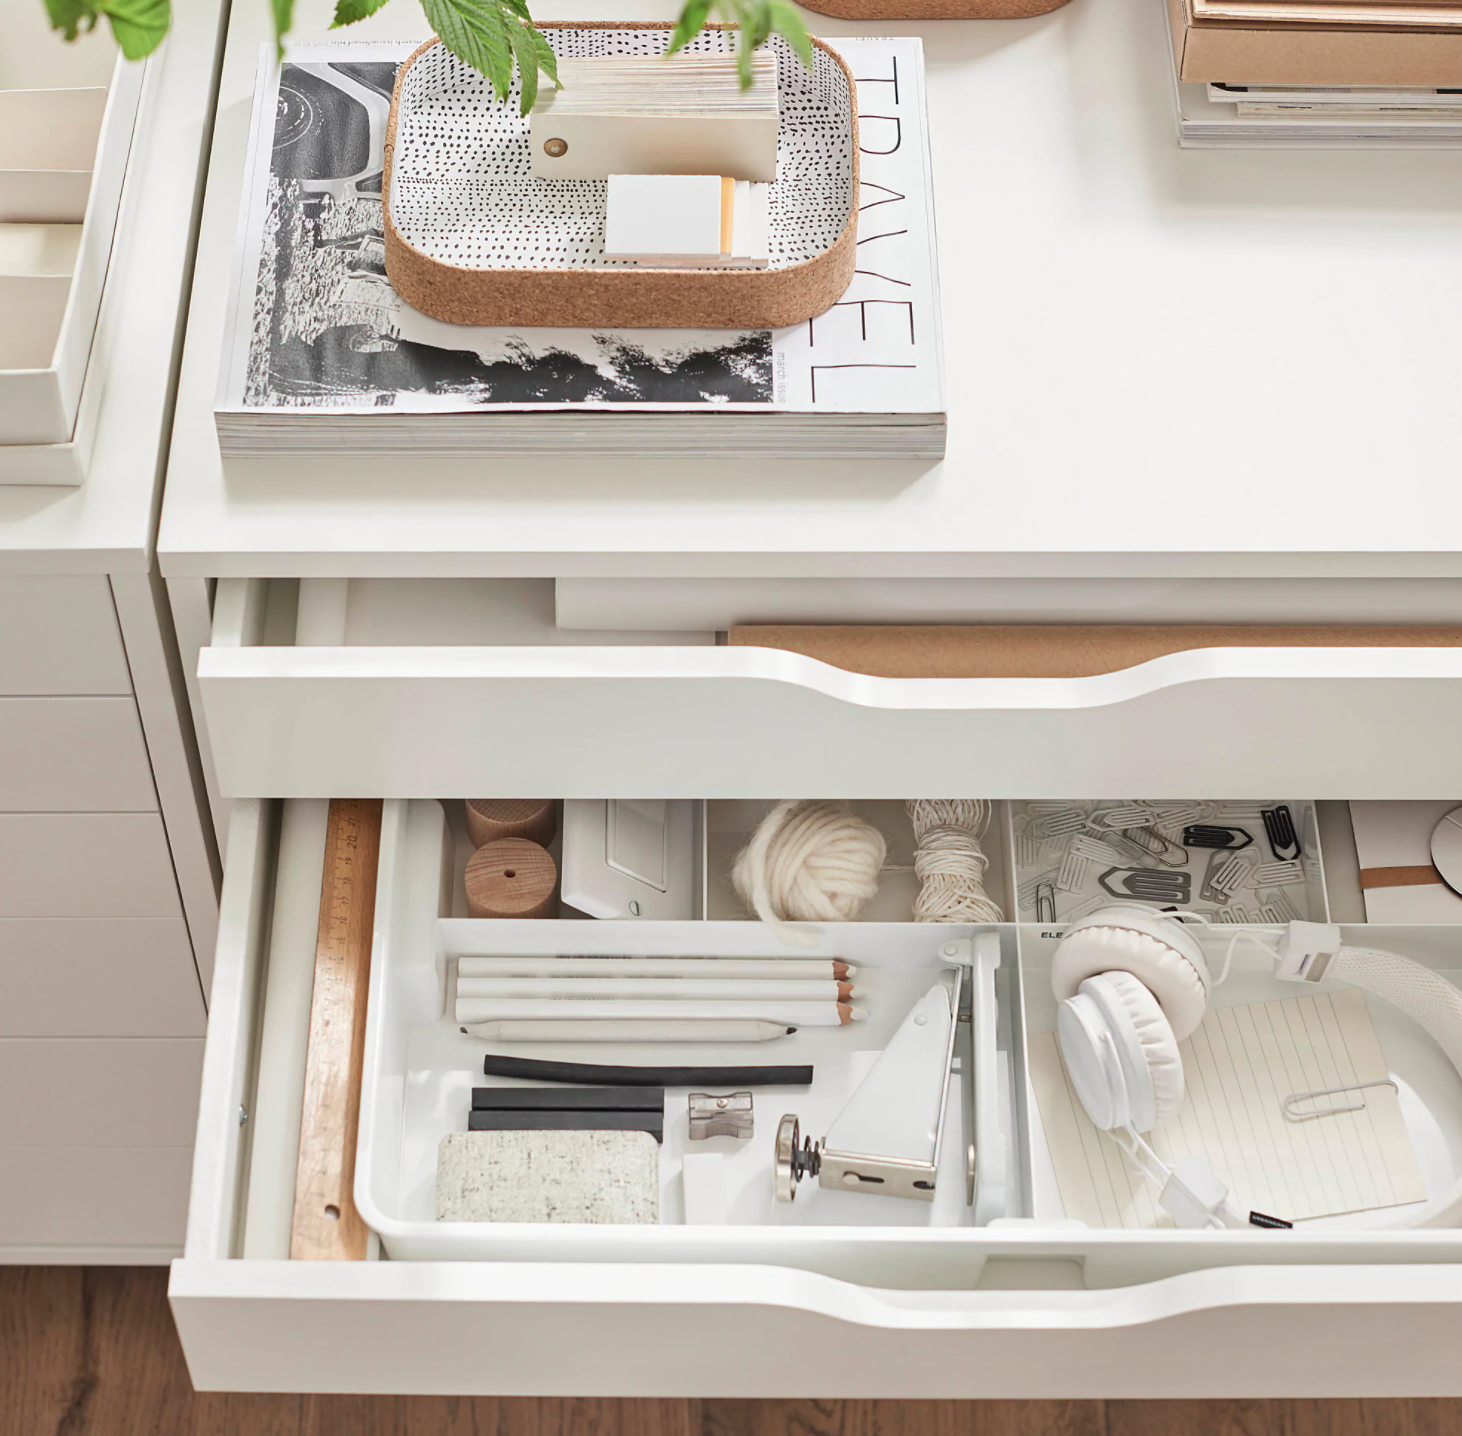 5 Stylish Drawer Storage Ideas - Dig This Design  Ikea küchenideen,  Küchenschubladenorganisation, Ikea schubladen